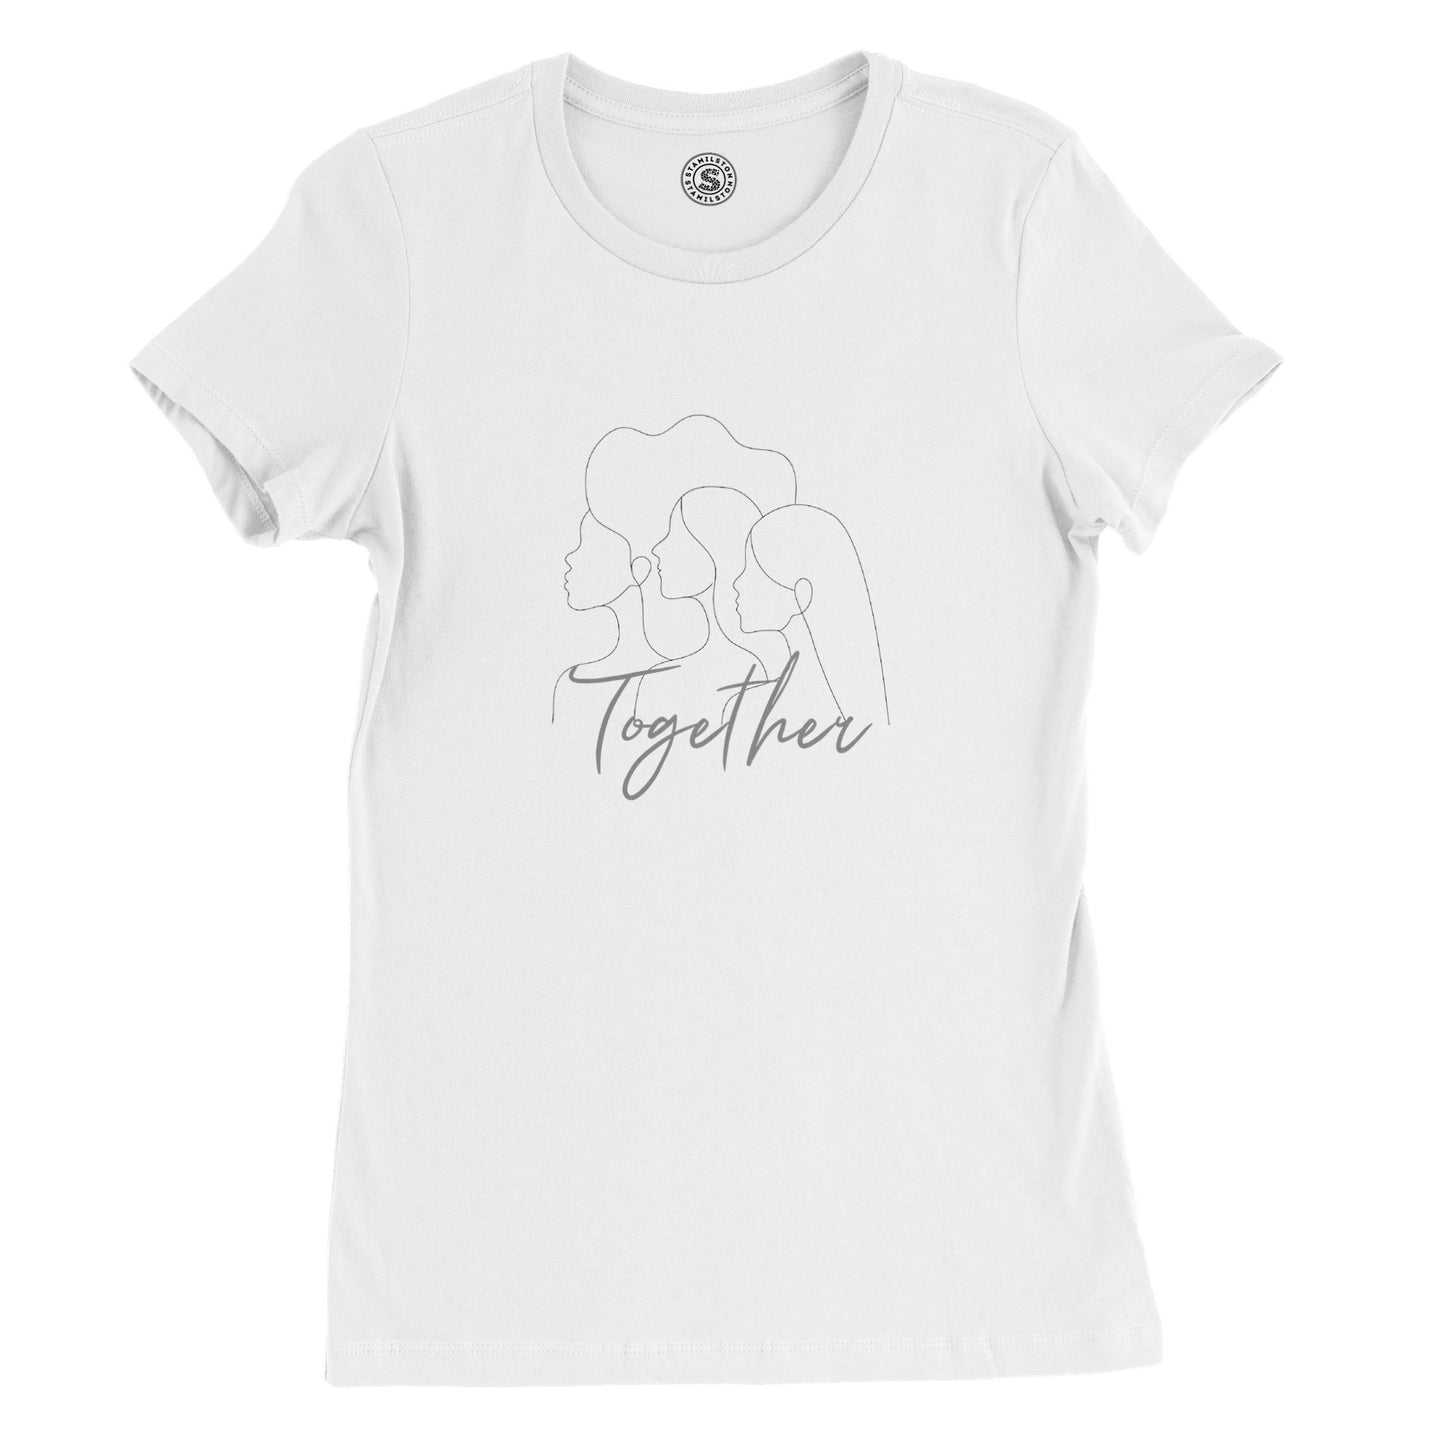 Together T-shirt